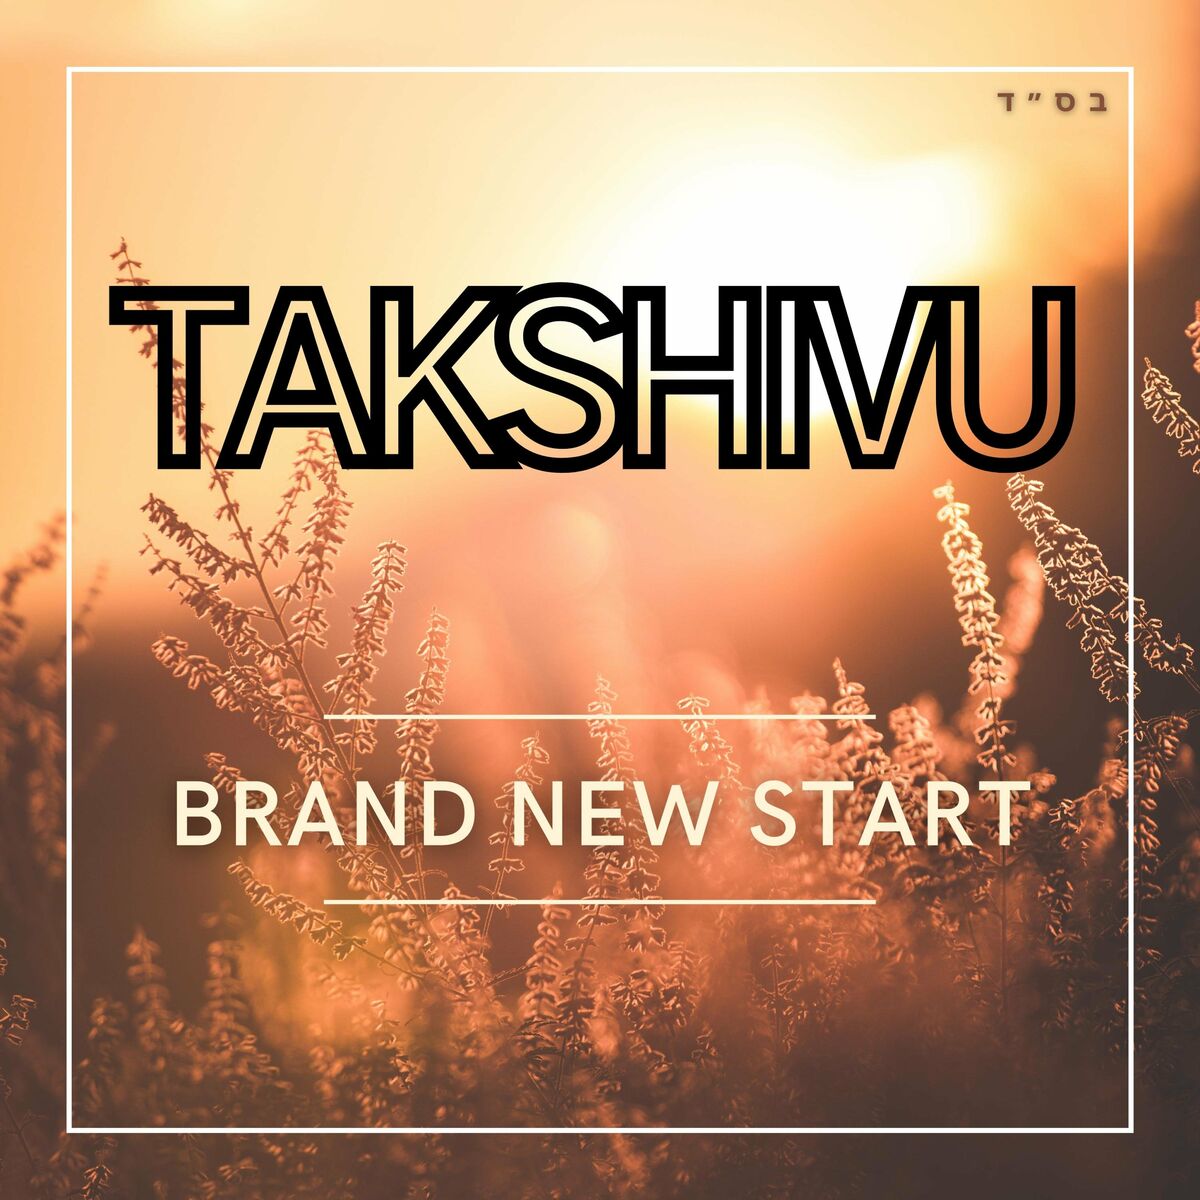 Takshivu - התחלה חדשה לגמרי (רווק)